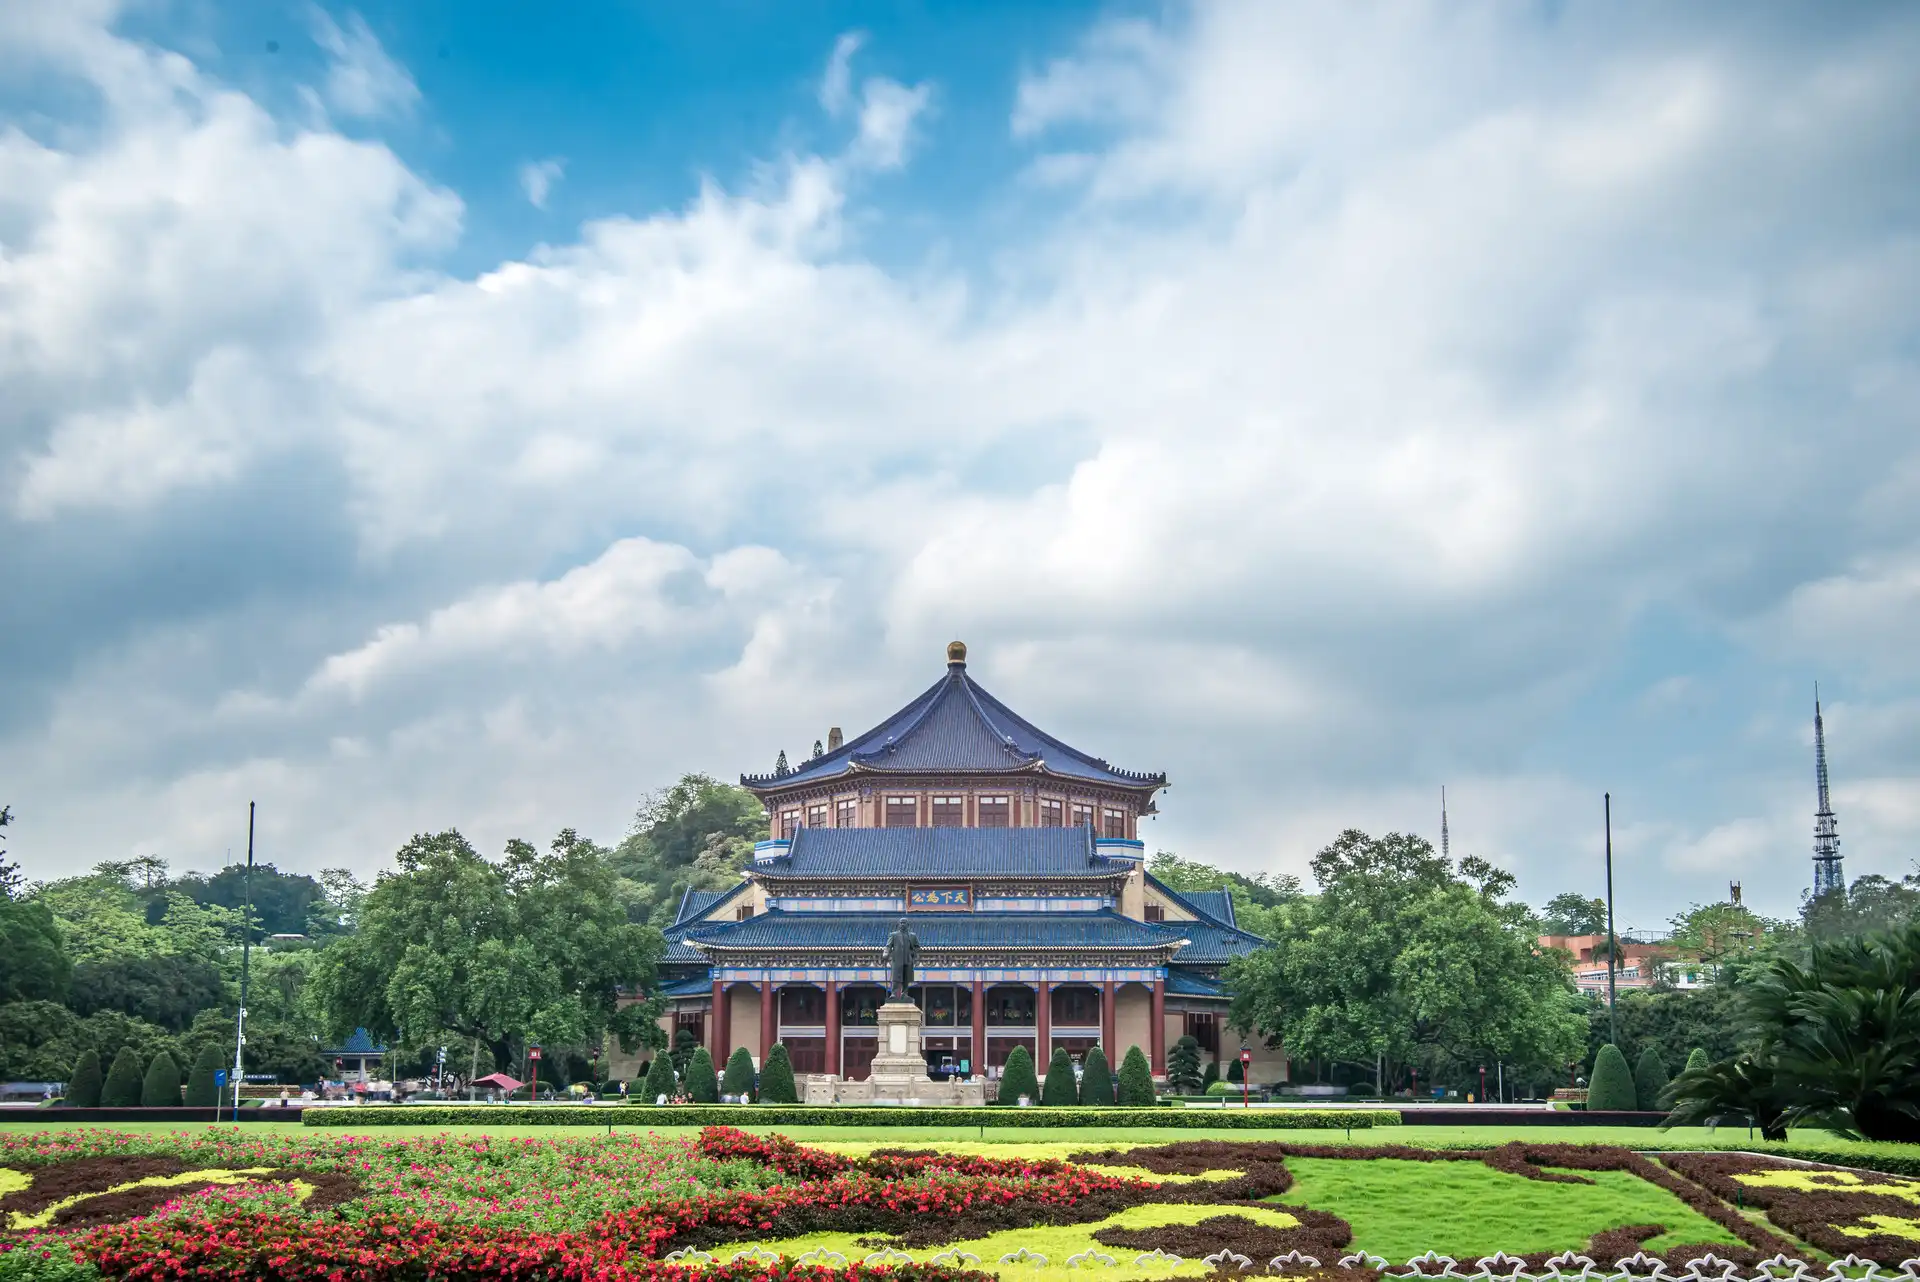 Zhongshan tourism